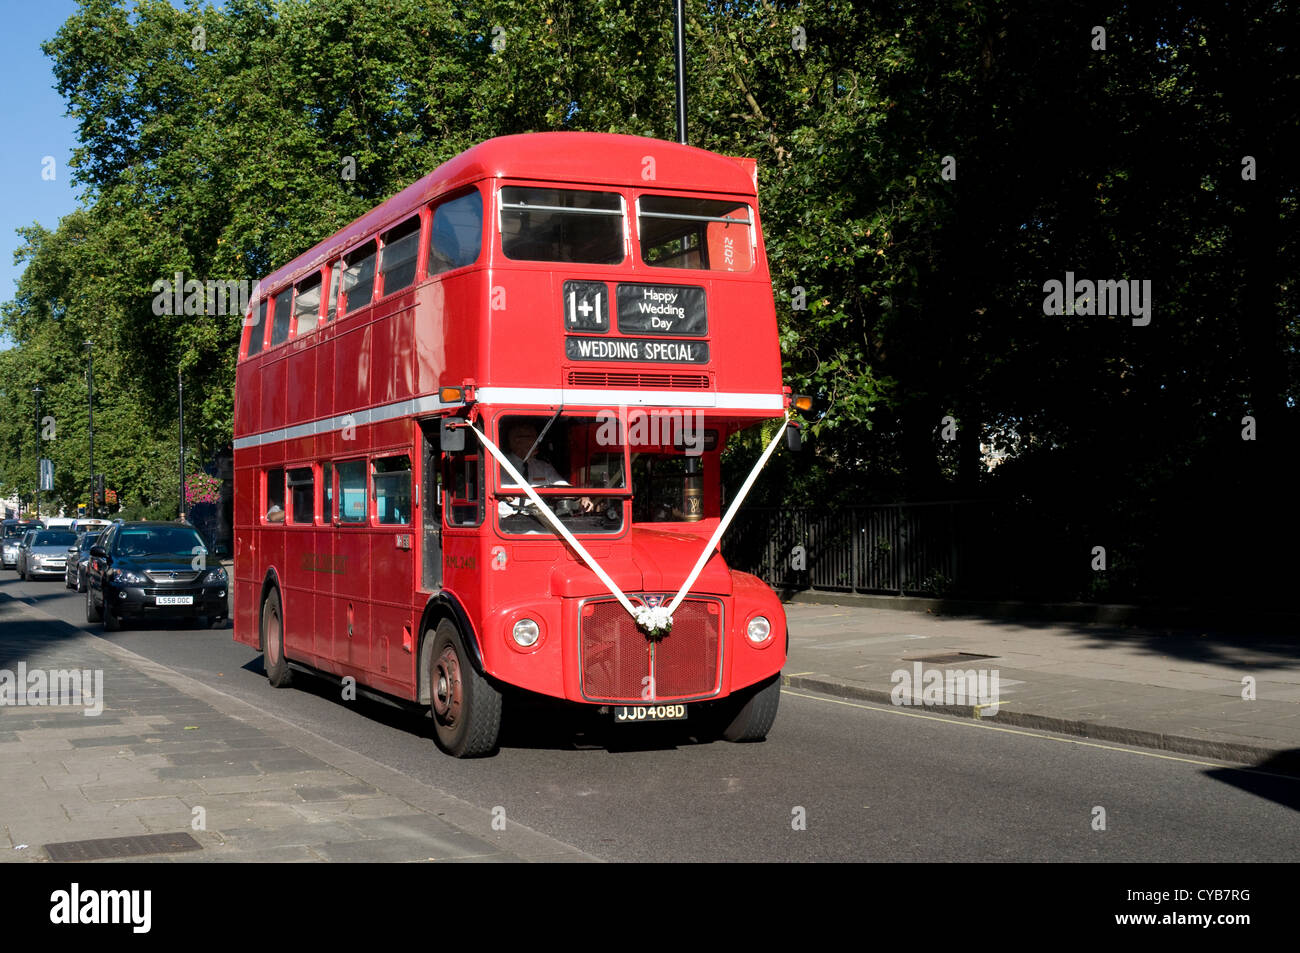 Un ex Londra Trasporto autobus Routemaster decorata come un matrimonio speciale veicolo. Il bus è passante lungo Piccadilly, Londra Foto Stock